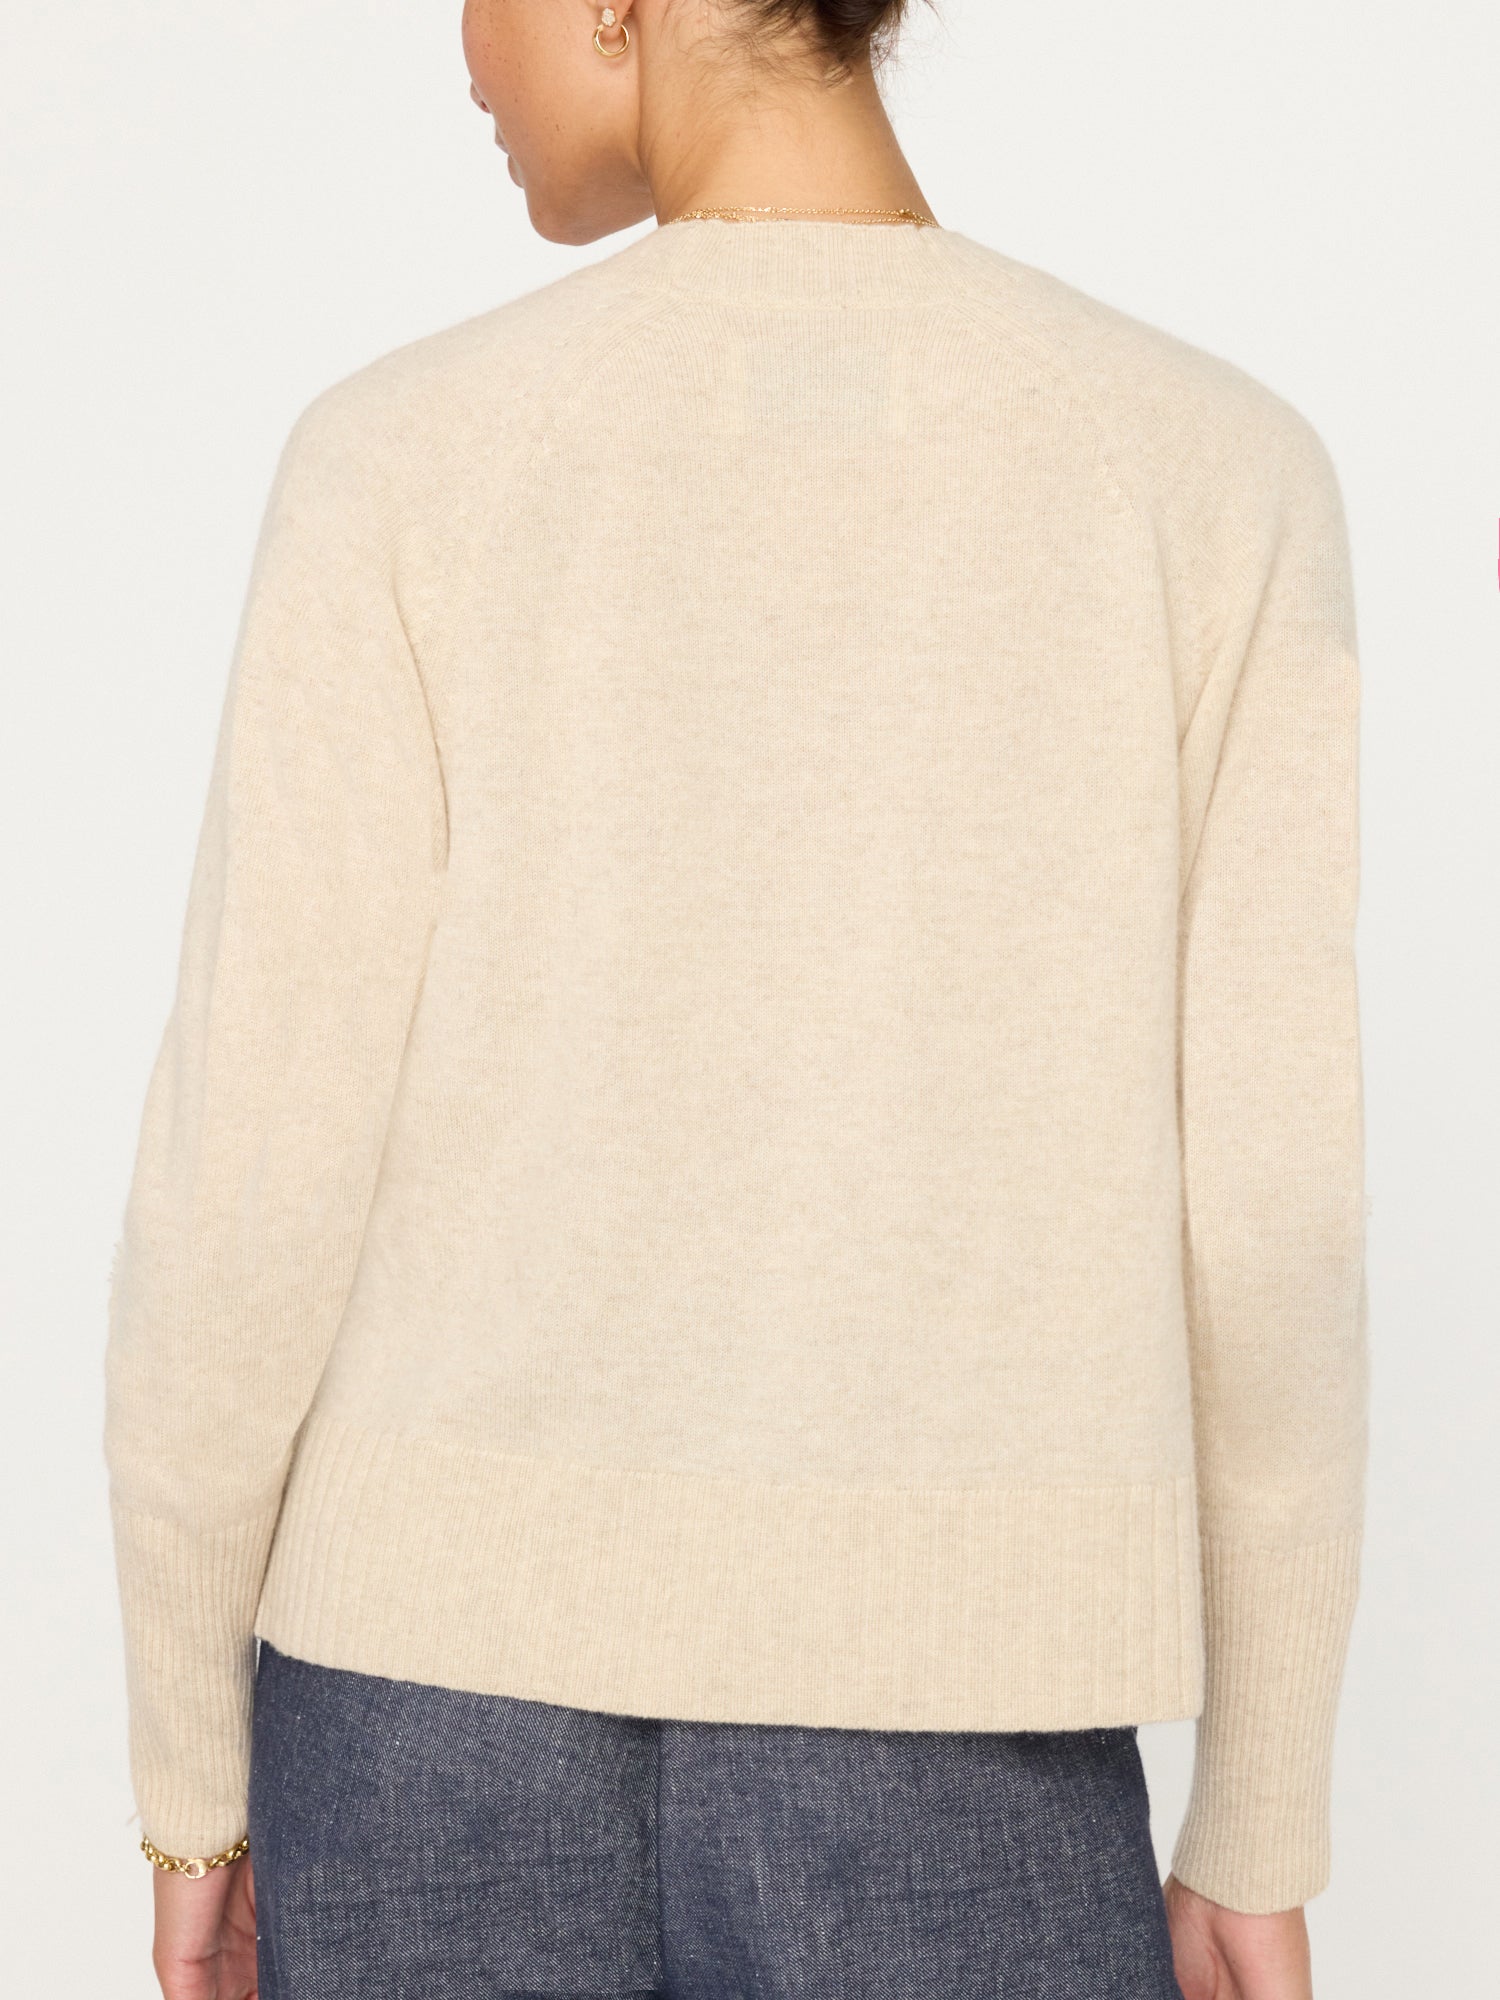 Jolie beige fringe trim v-neck sweater back view